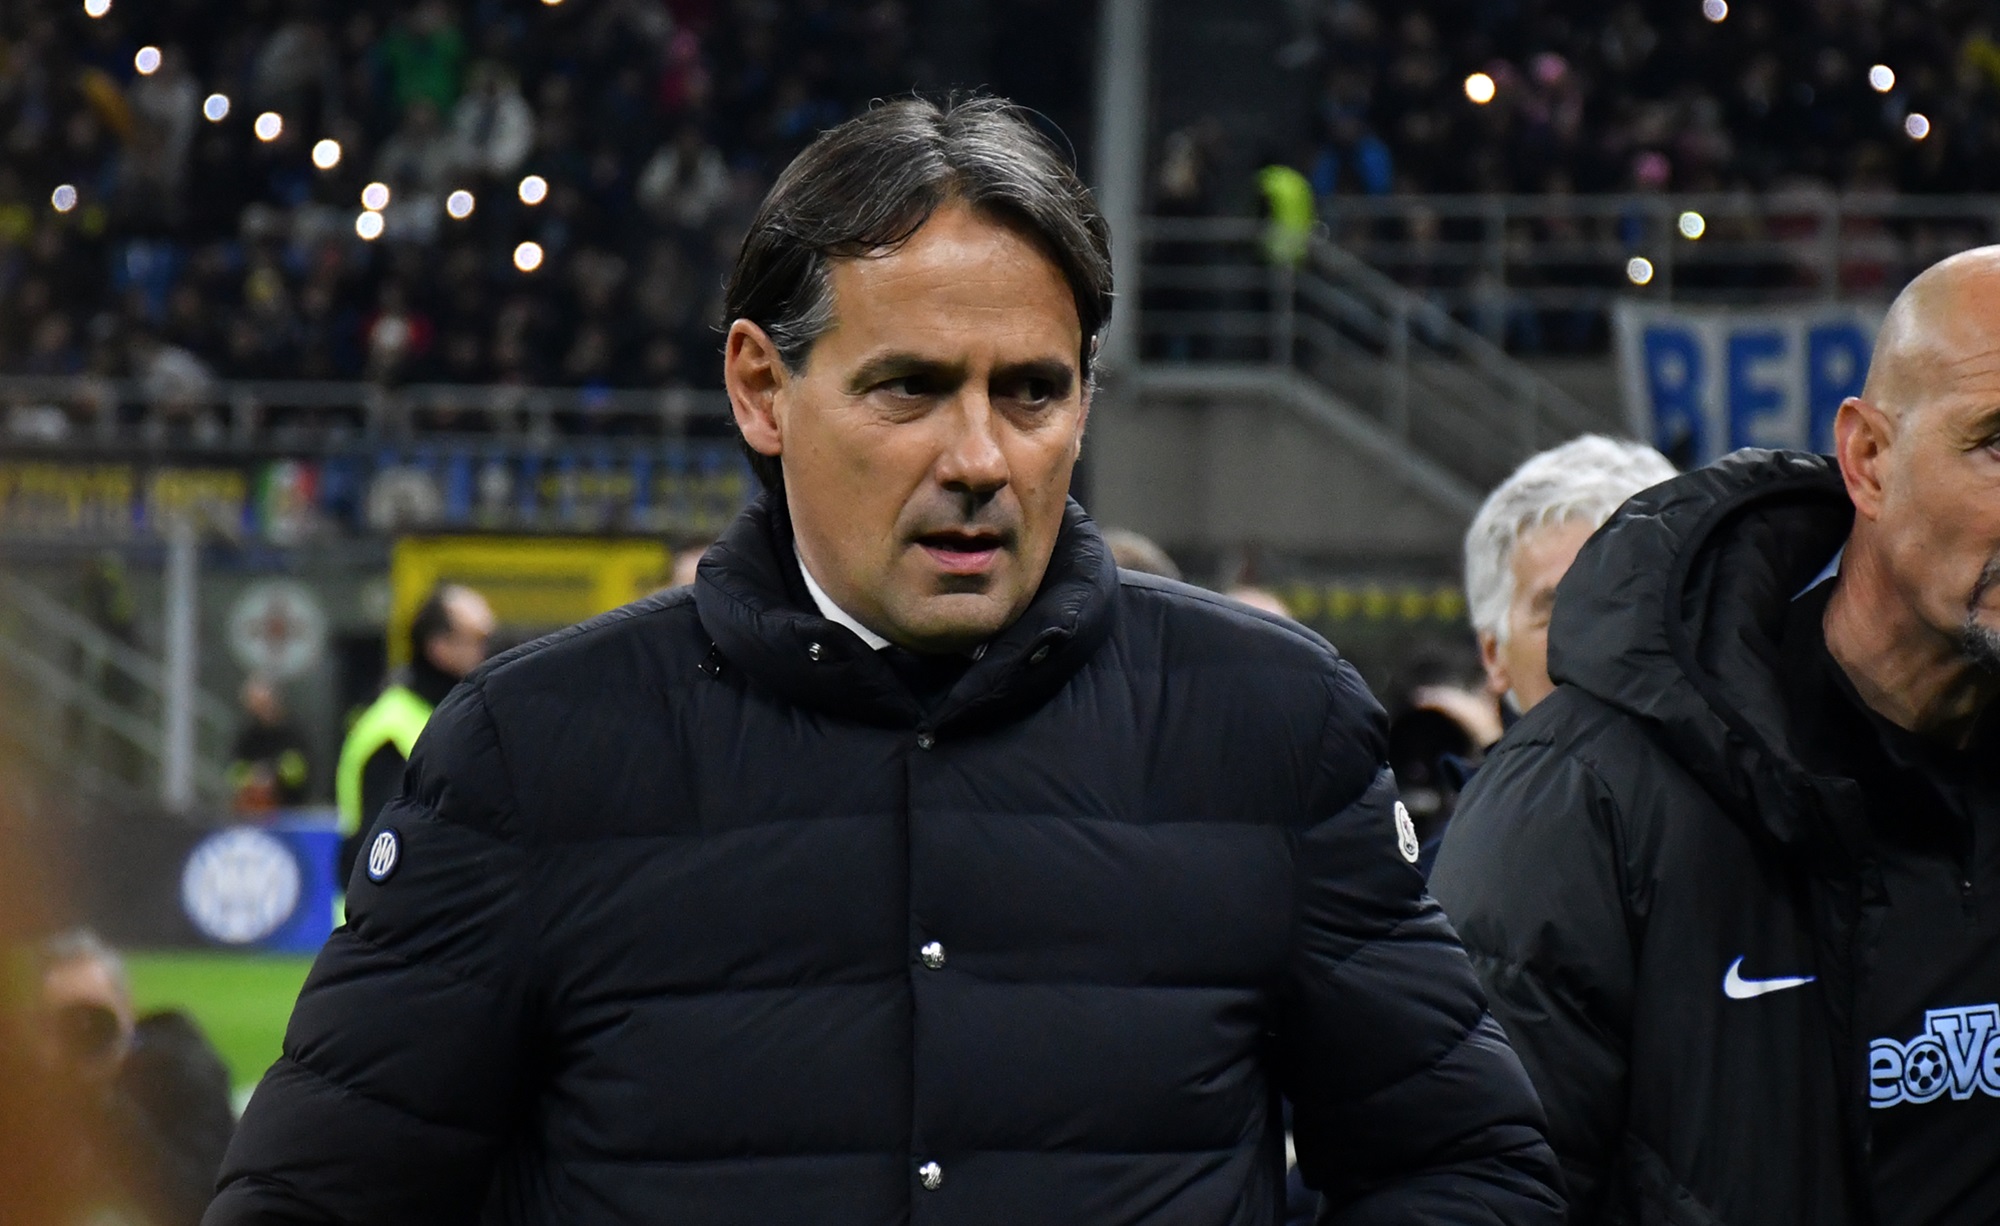 Inter come la Juventus dei record: 69 punti per Inzaghi in 26 giornate, alla pari con Conte nel 2014